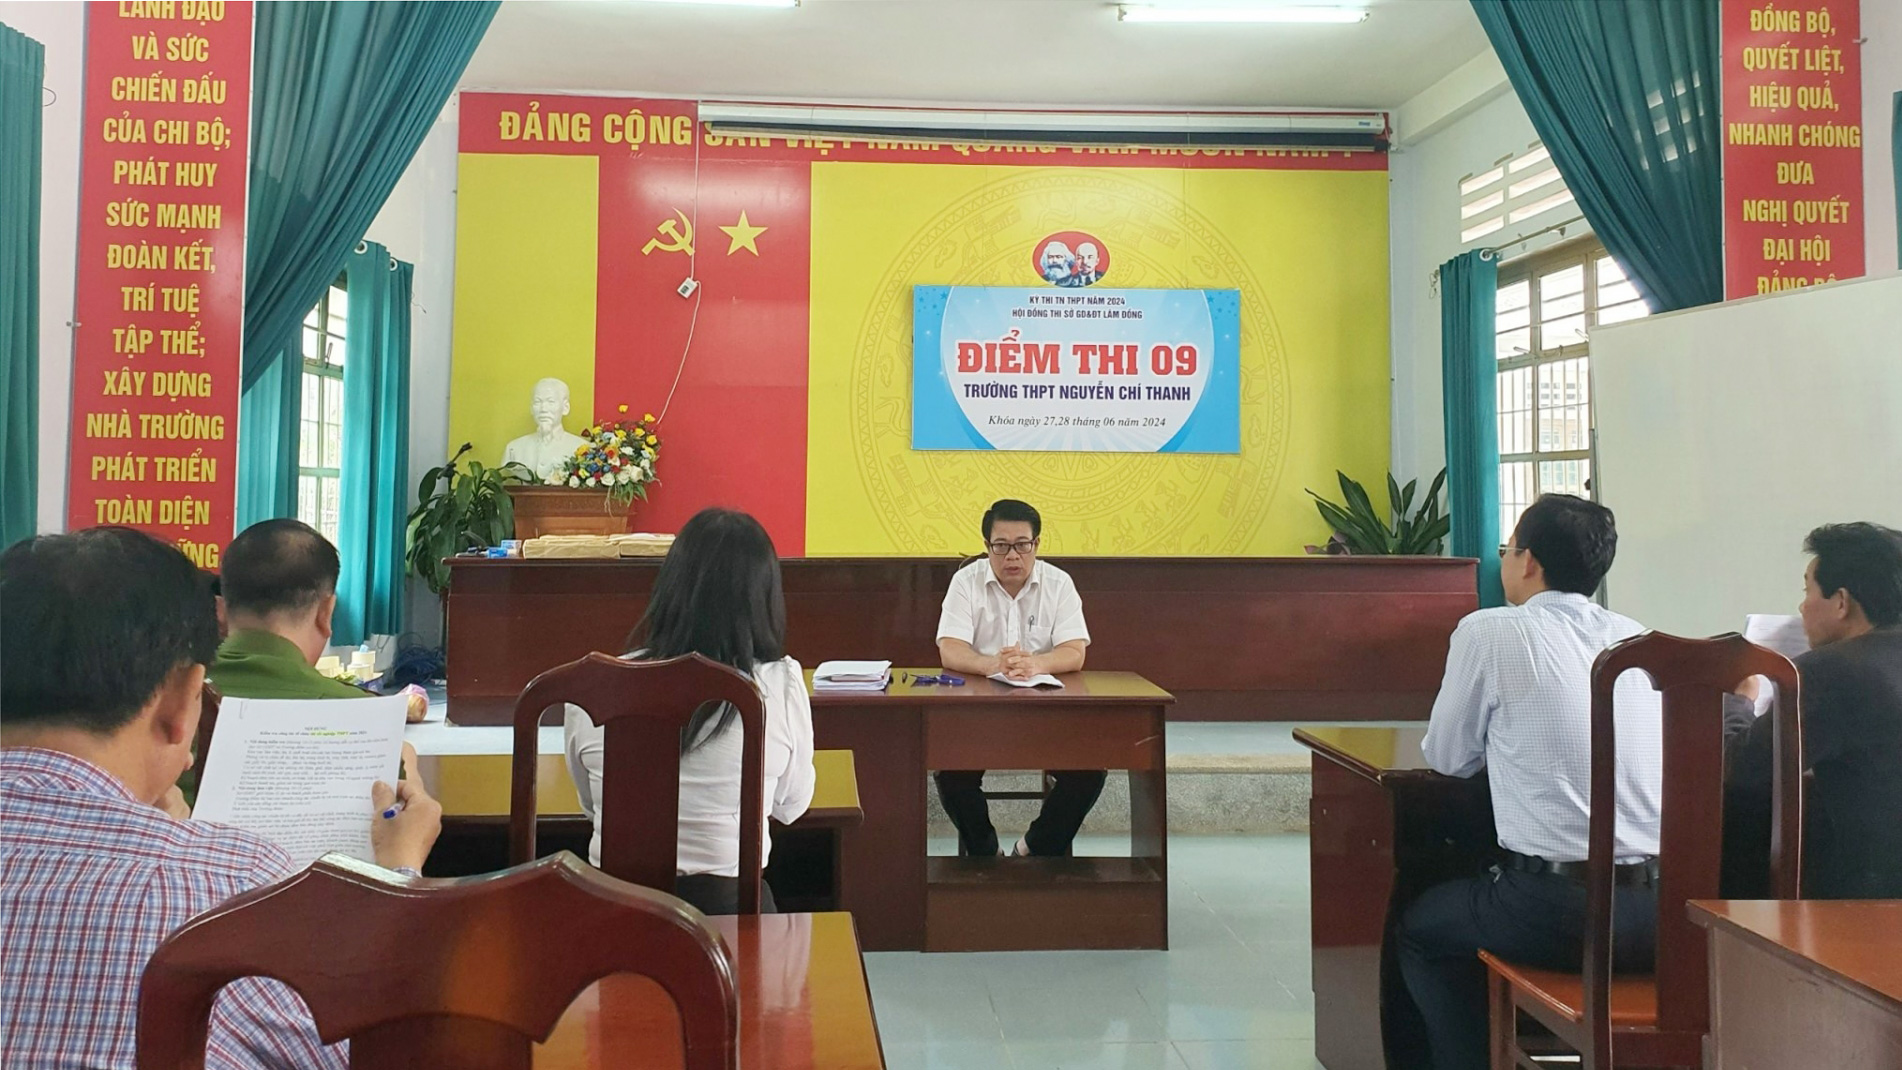 Phó Chủ tịch UBND tỉnh Lâm Đồng Nguyễn Ngọc Phúc kiểm tra tại Trường THPT Nguyễn Chí Thanh, huyện Đam Rông